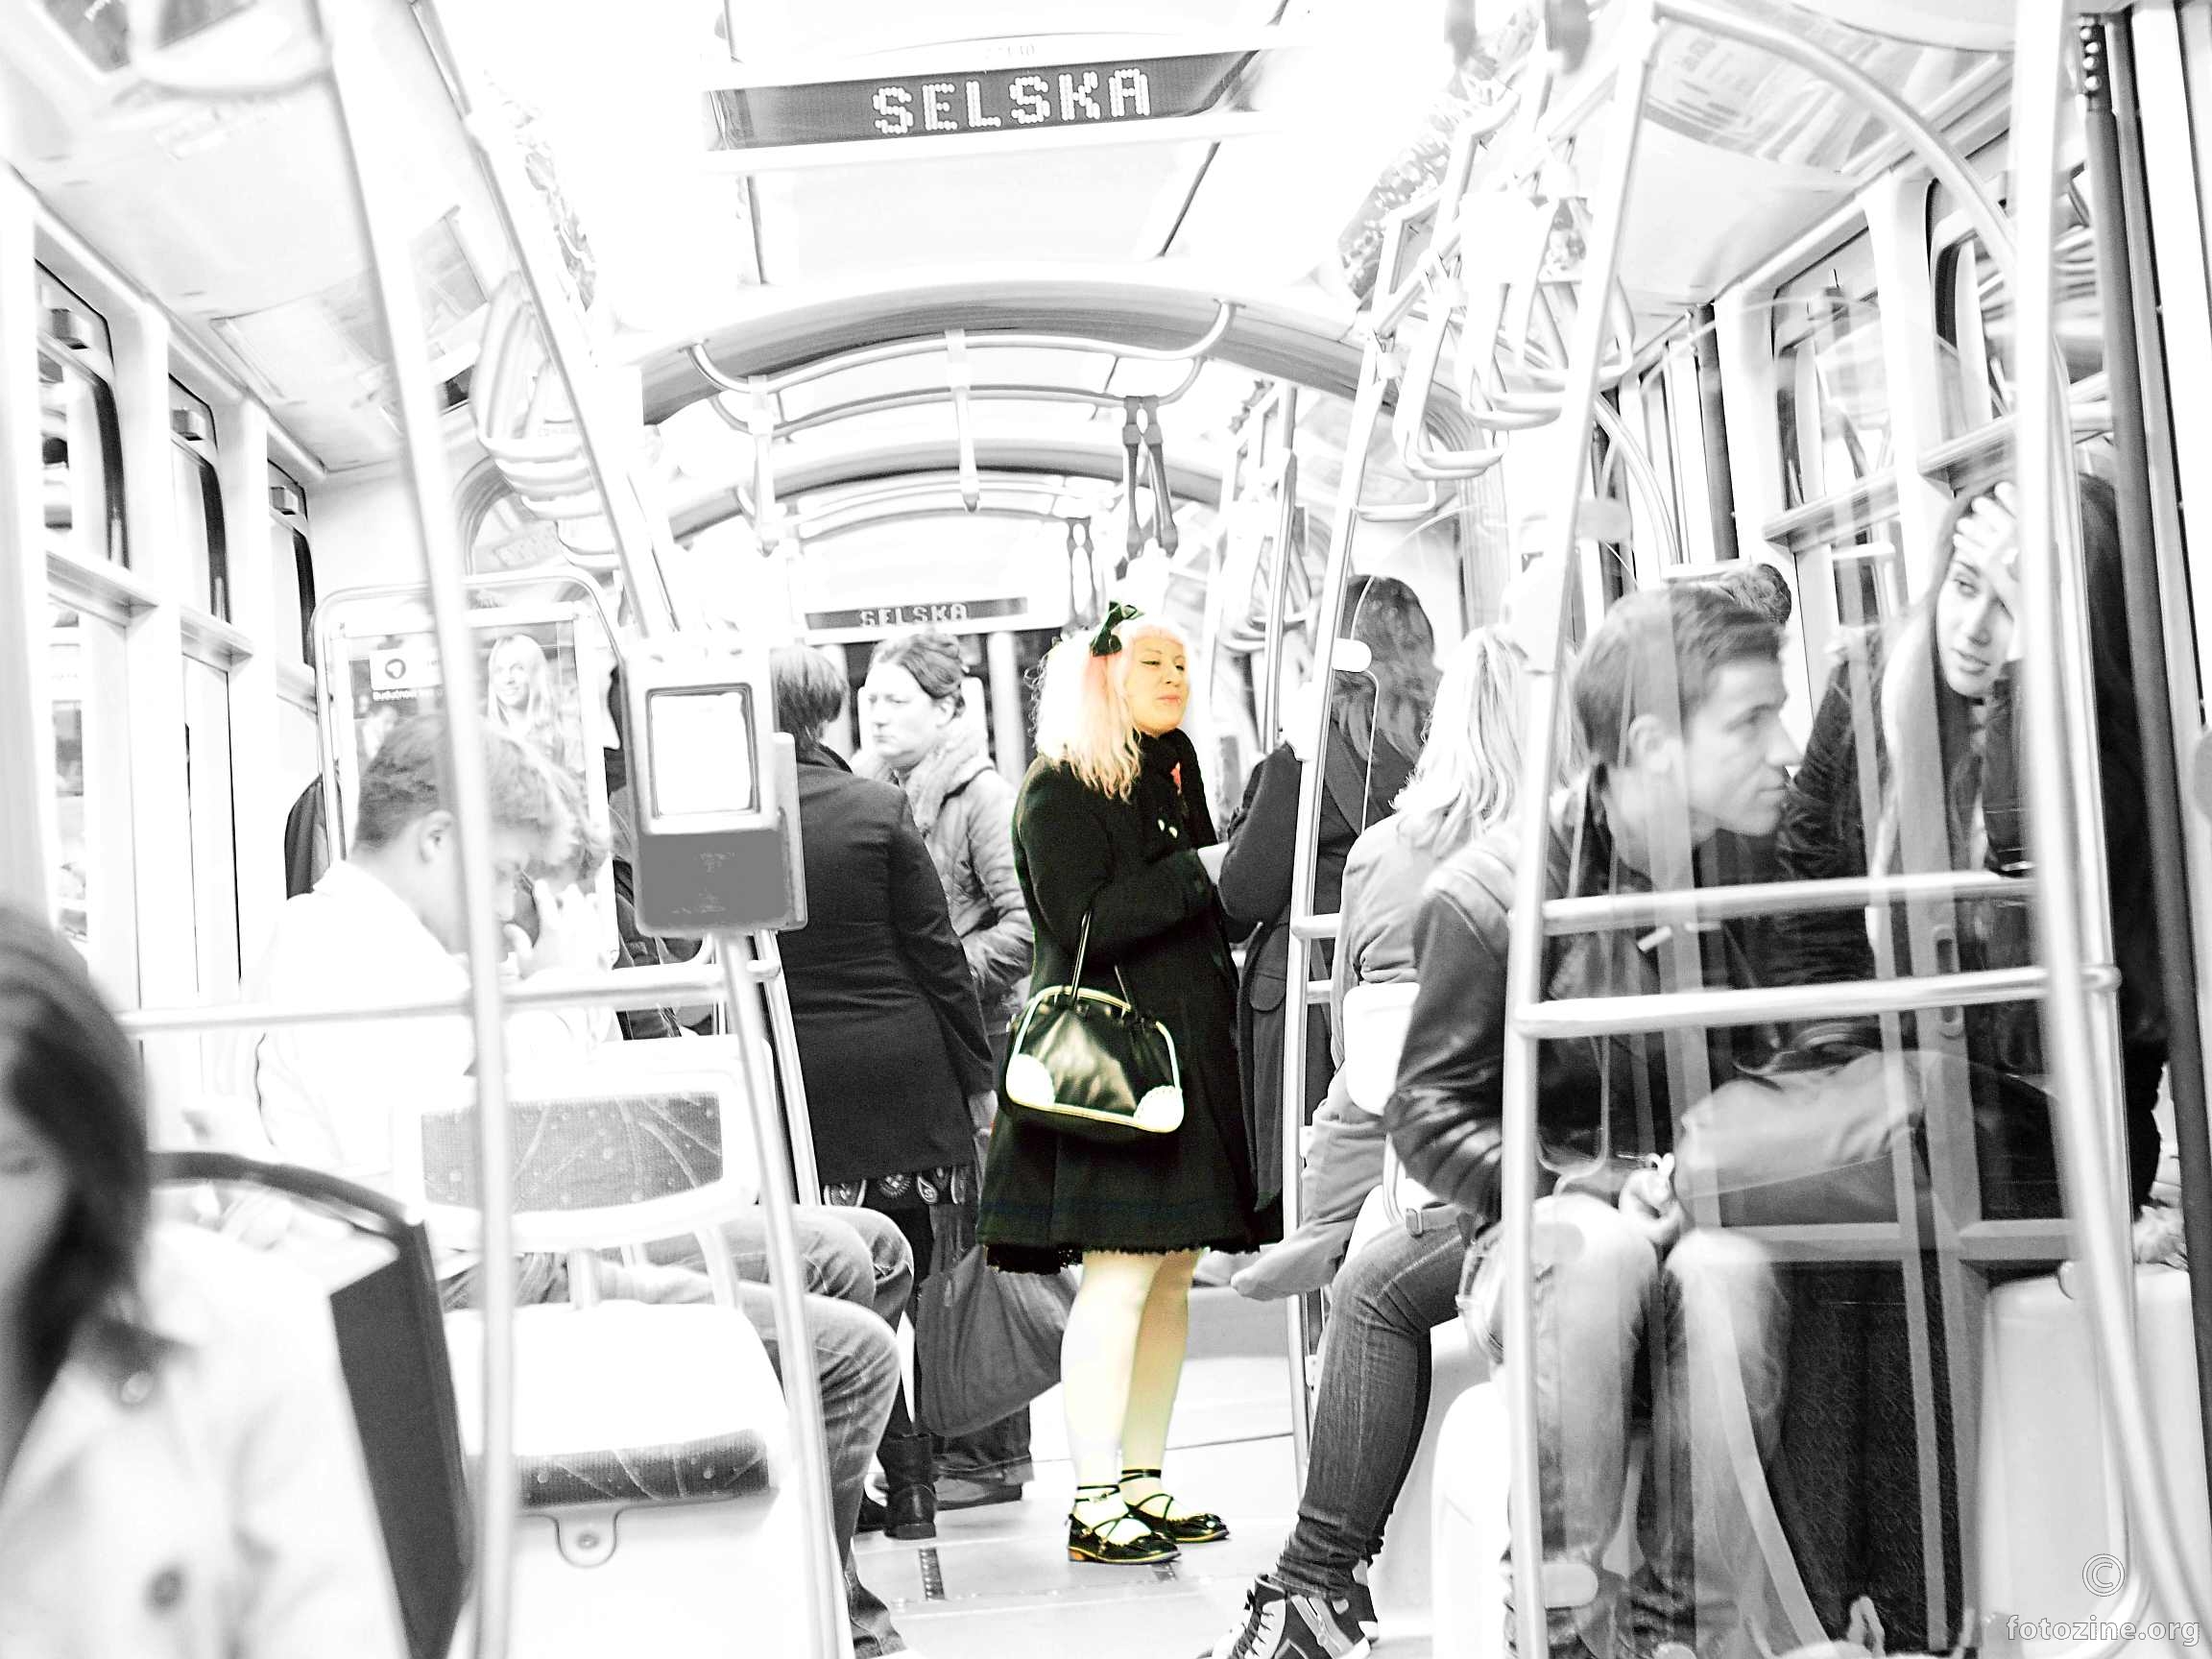 neznanka u tramvaju